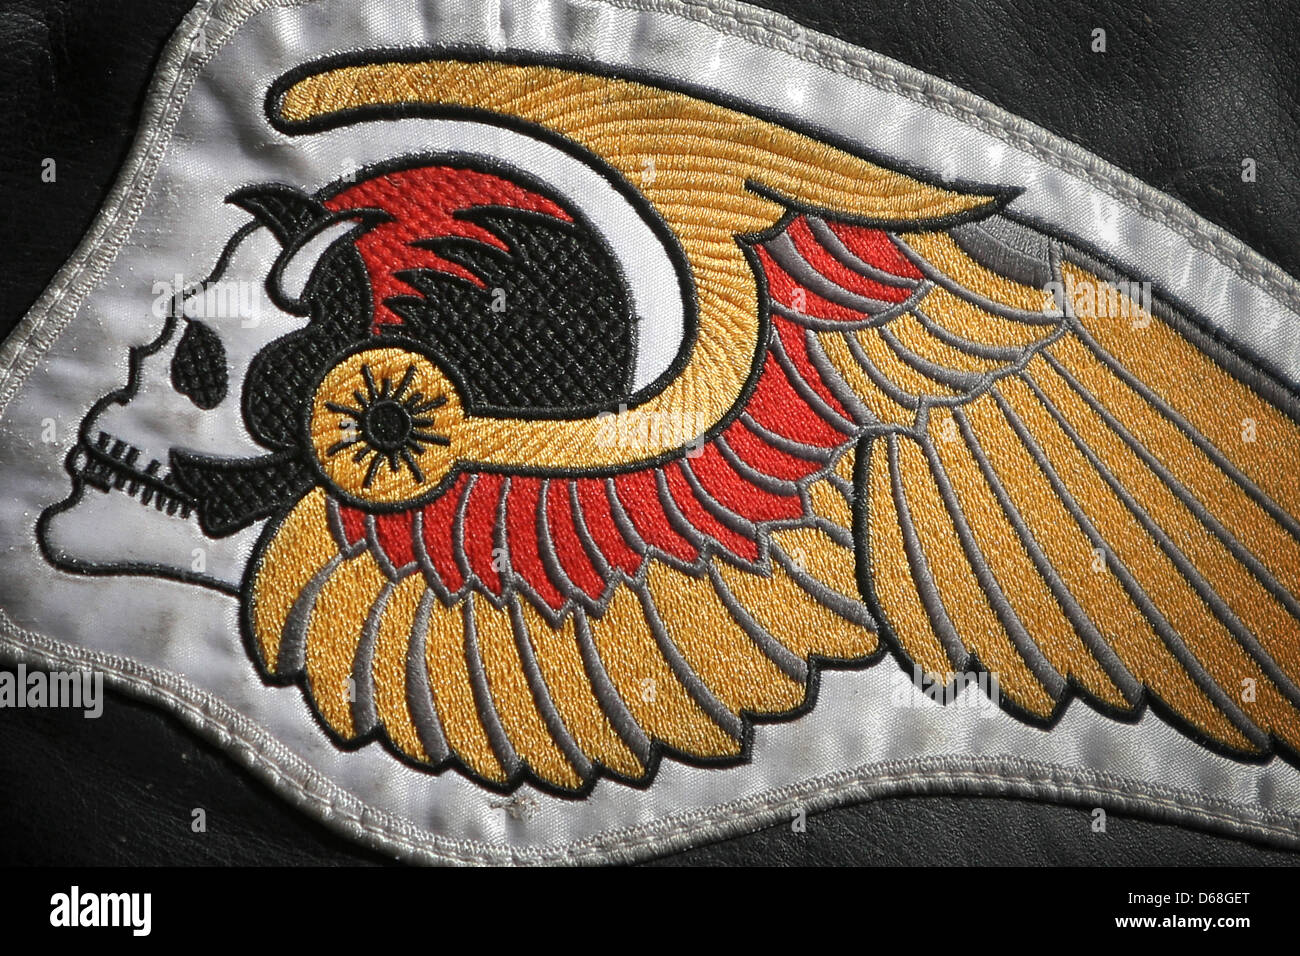 Le logo de la moto club de motards Hells Angels est visible sur une veste  en cuir d'une personne participant à une action de protestation à  Francfort-sur-Main, Allemagne, 14 juillet 2012. Environ